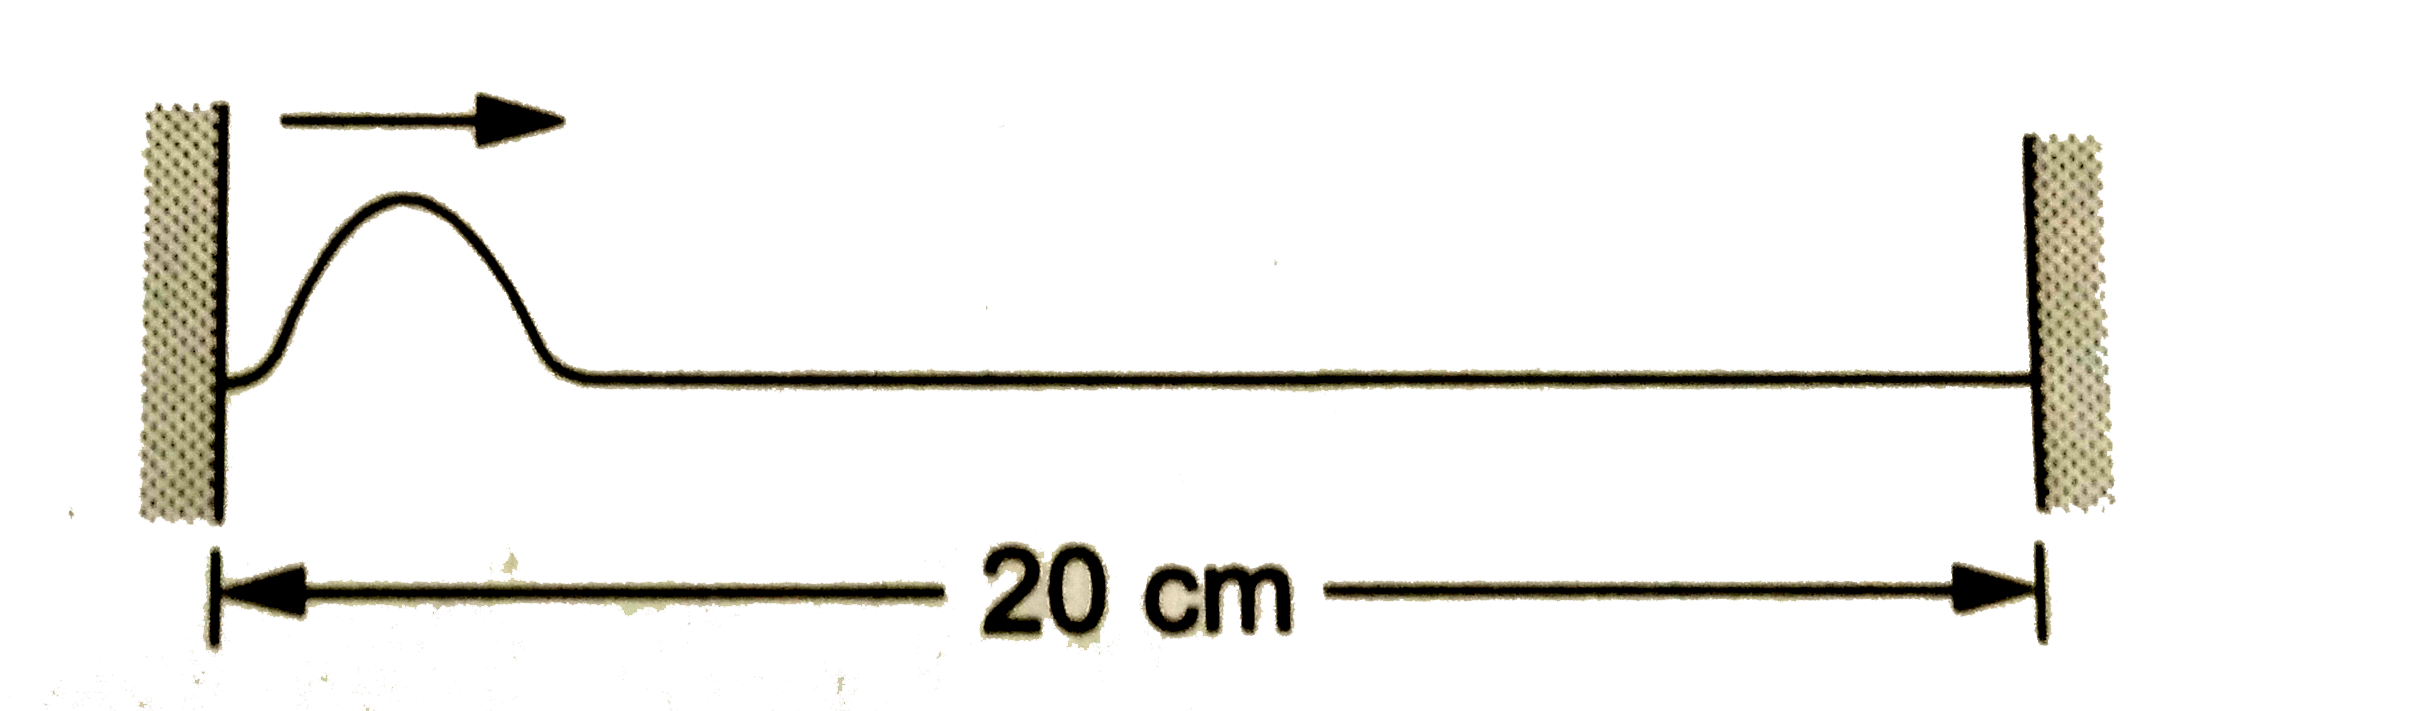 अपने दोनों किनारों पर बँधी एक डोरी की लंबाई 20 cm,  इसका रेखीय द्रव्यमान घनत्व0.40 g//cm तथा तनाव16 N है । समय t = 0 पर इसके एक किनारे पर एक छोटी-सी तरंगिका पैदा की जाती है जो दूसरे किनारे की और चलती है । कितने समय बाद डोरी  की शक्ल फिर से वैसी ही हो जाएगी जैसी t = 0 पर चित्र में दिखाई गई है ?